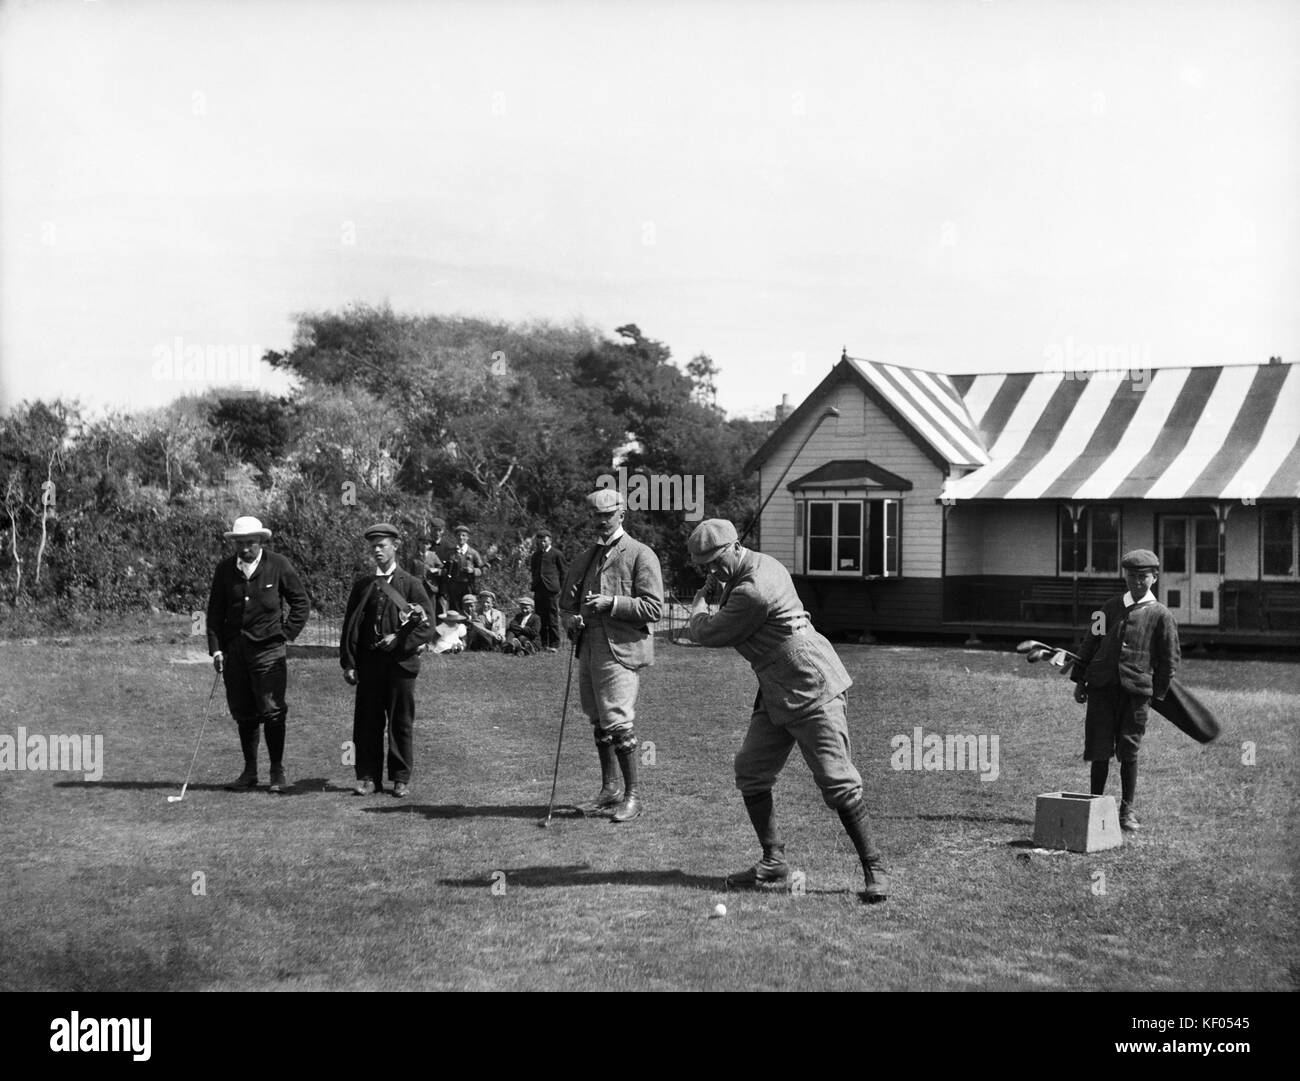 Burnham et Berrow Golf, Somerset. Ouvert en 1891 par le Club de Golf de Burnham, le cours était à l'origine neuf trous. Il a été étendu en 1896 et le c Banque D'Images